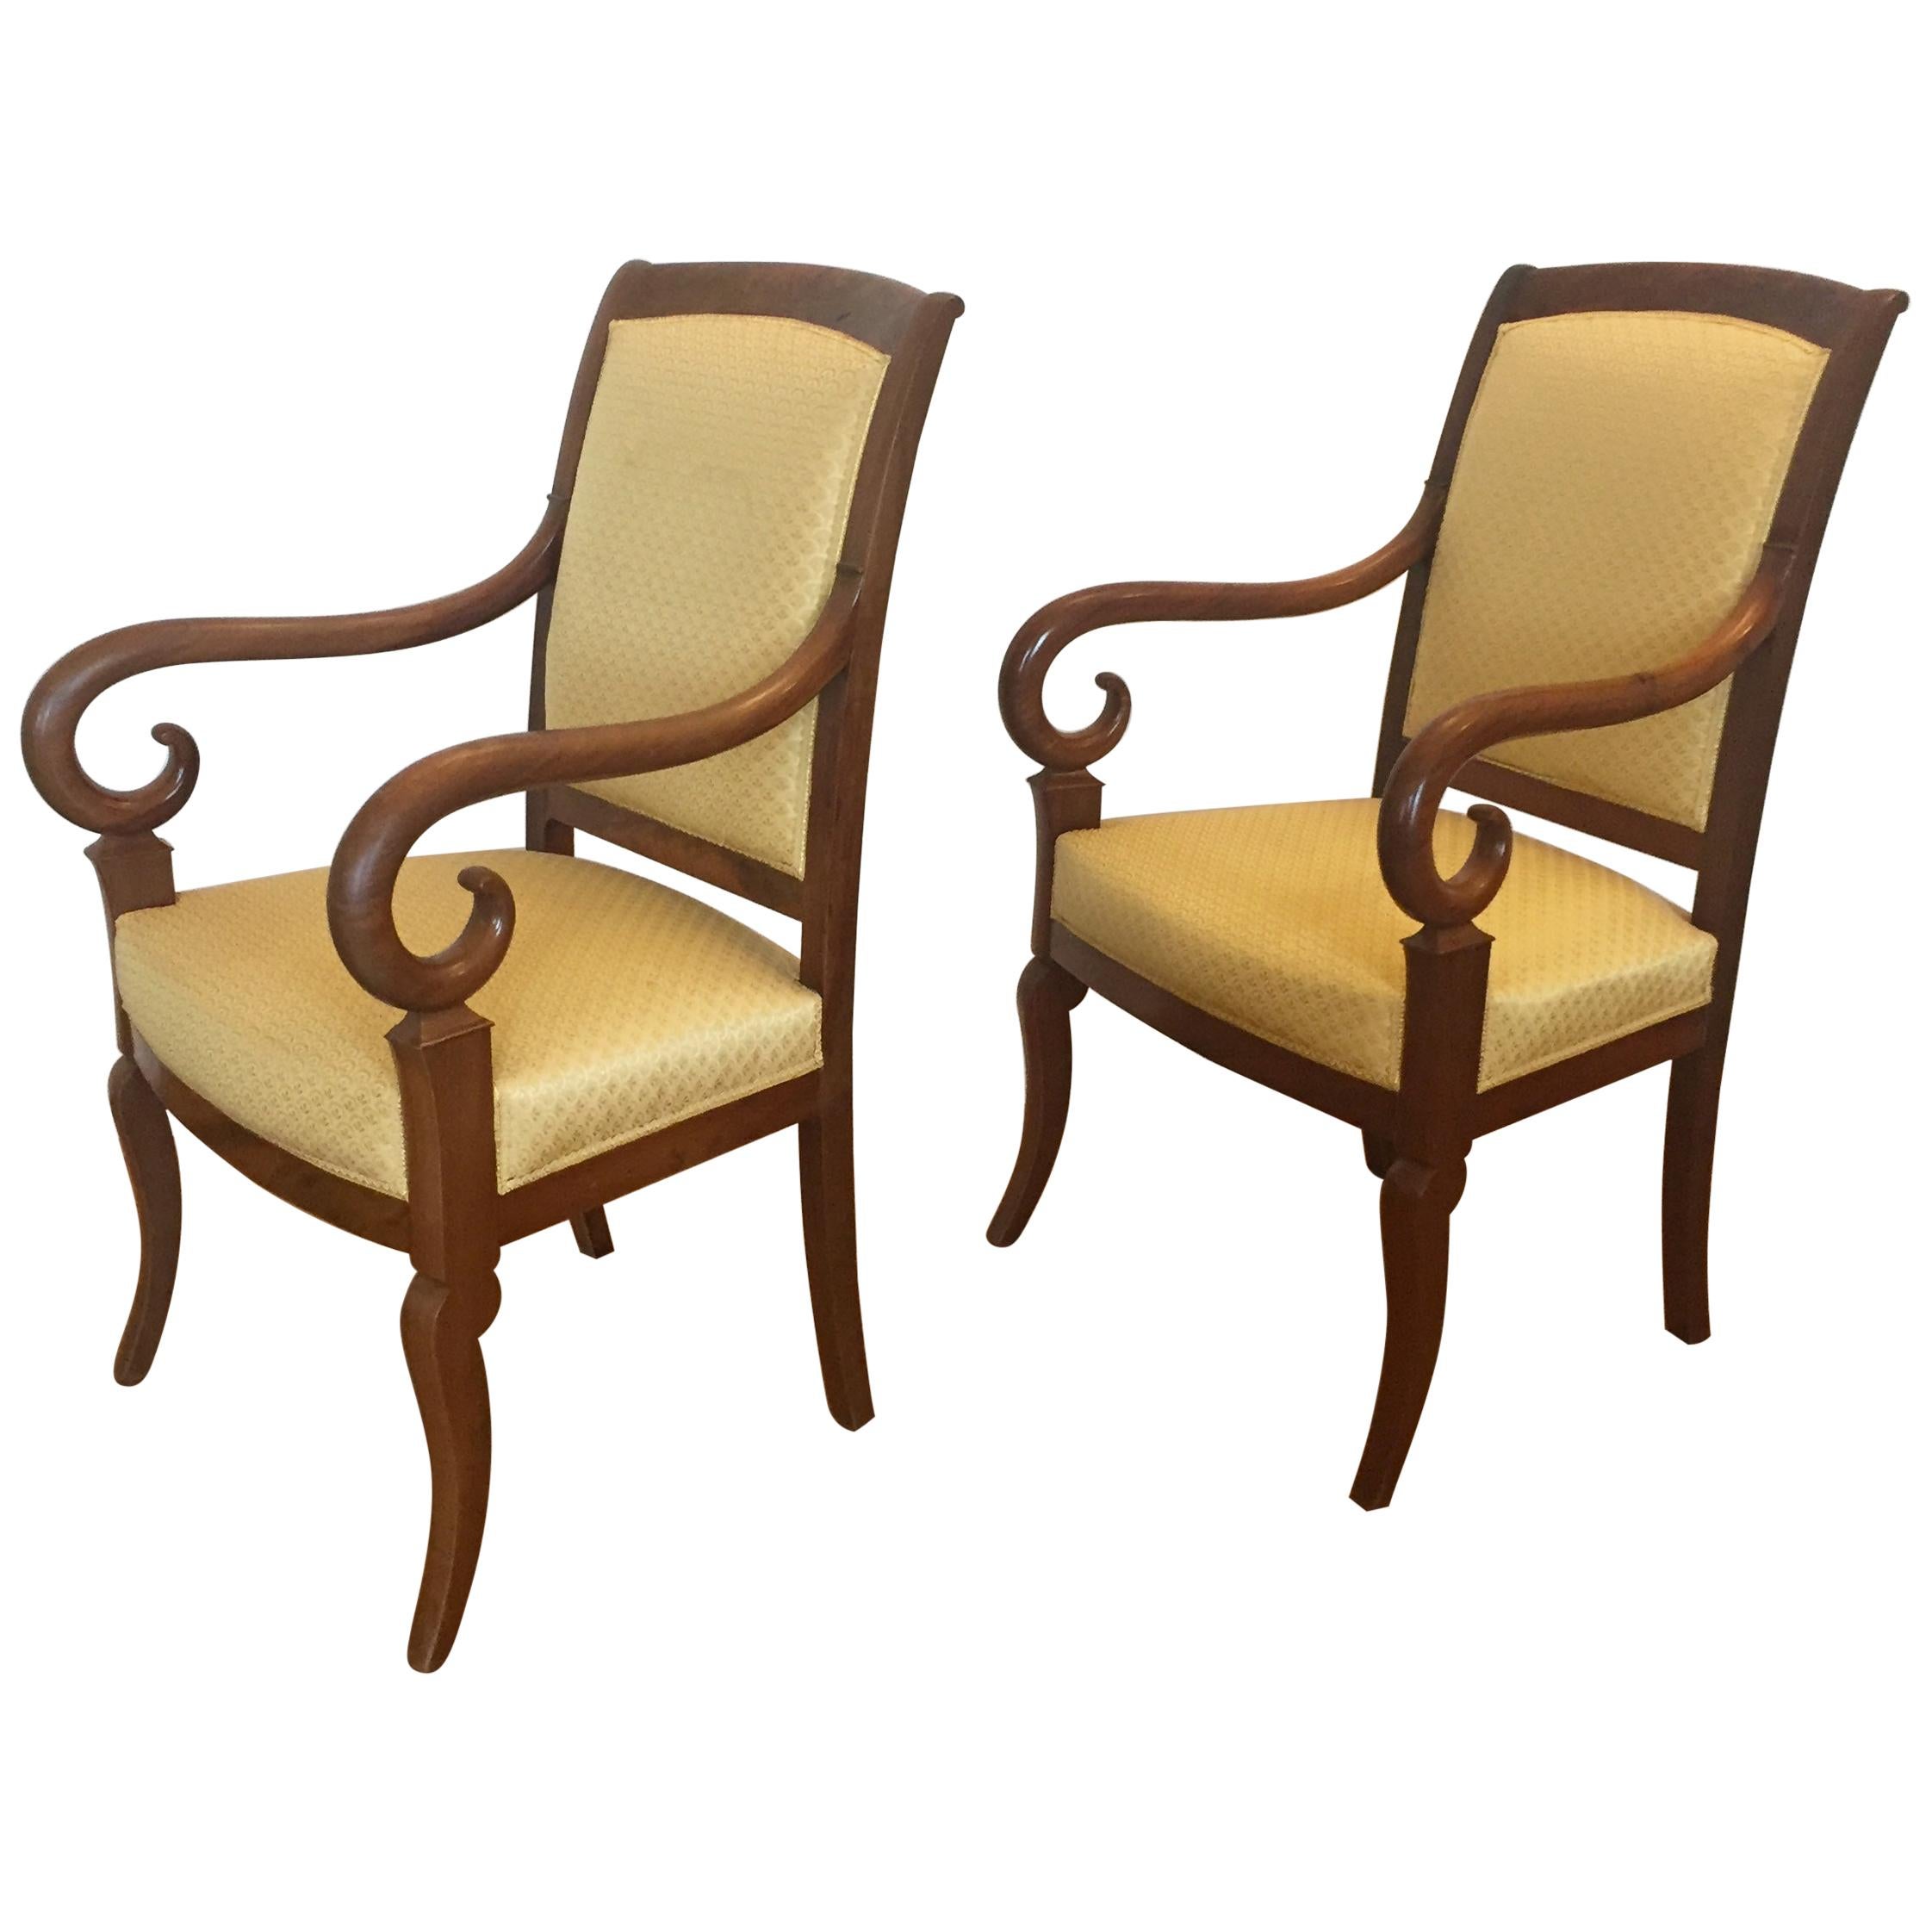 Paire de fauteuils français Louis Phillipe en acajou recouverts d'un tissu jaune